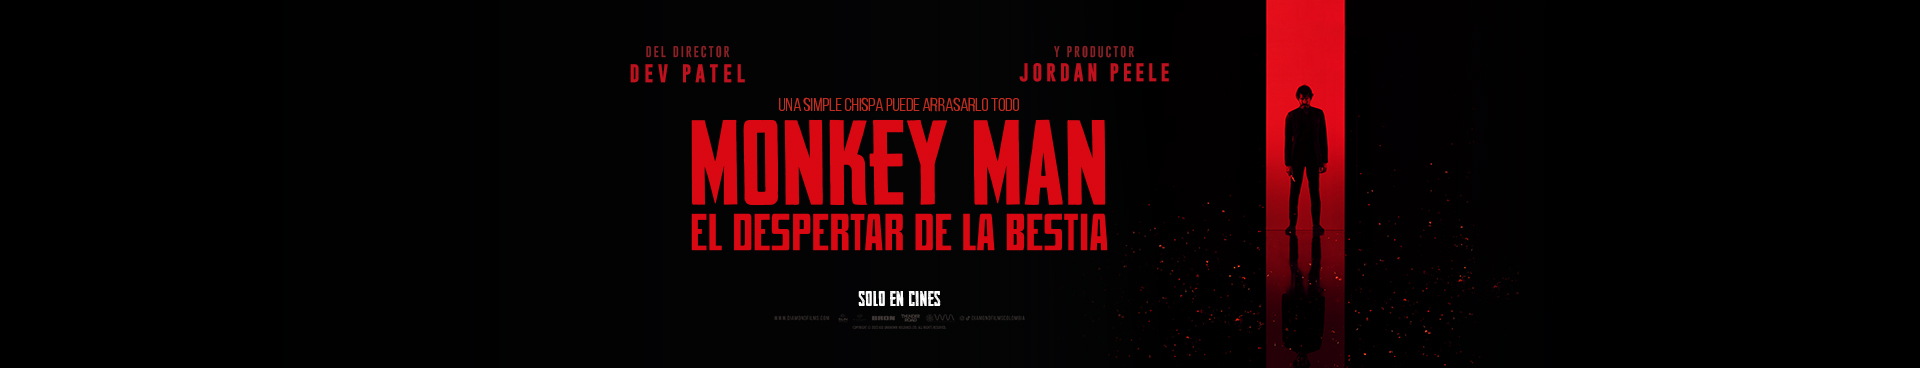 Monkey Man El Despertar de la Bestia